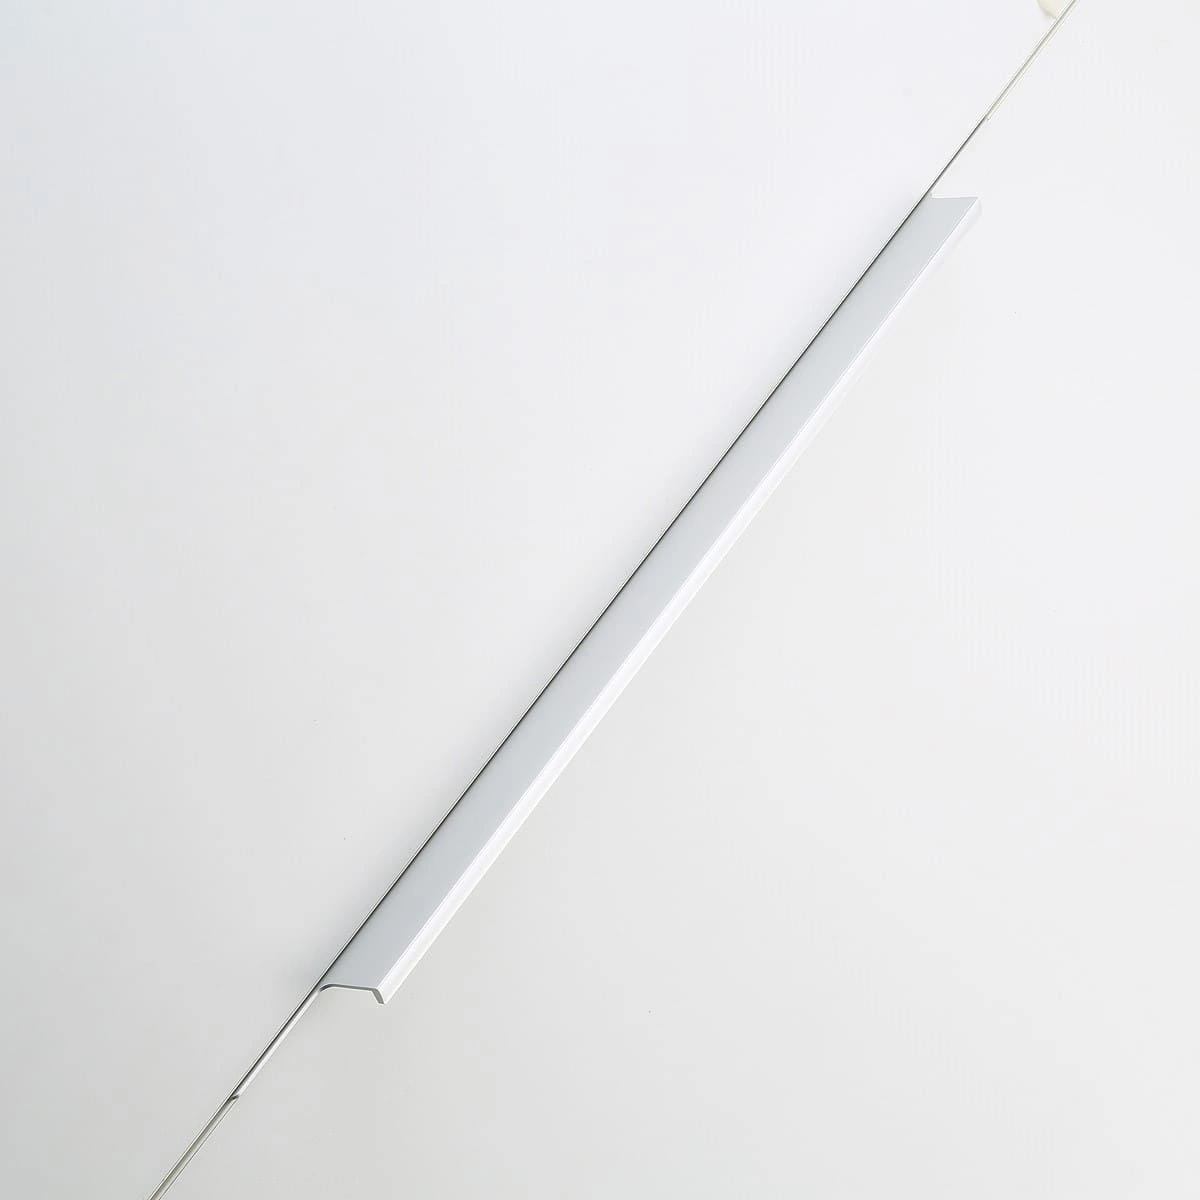 Купить UA-LIND-224-496-05 Ручка мебельная алюминиевая, алюминий в нашем каталоге